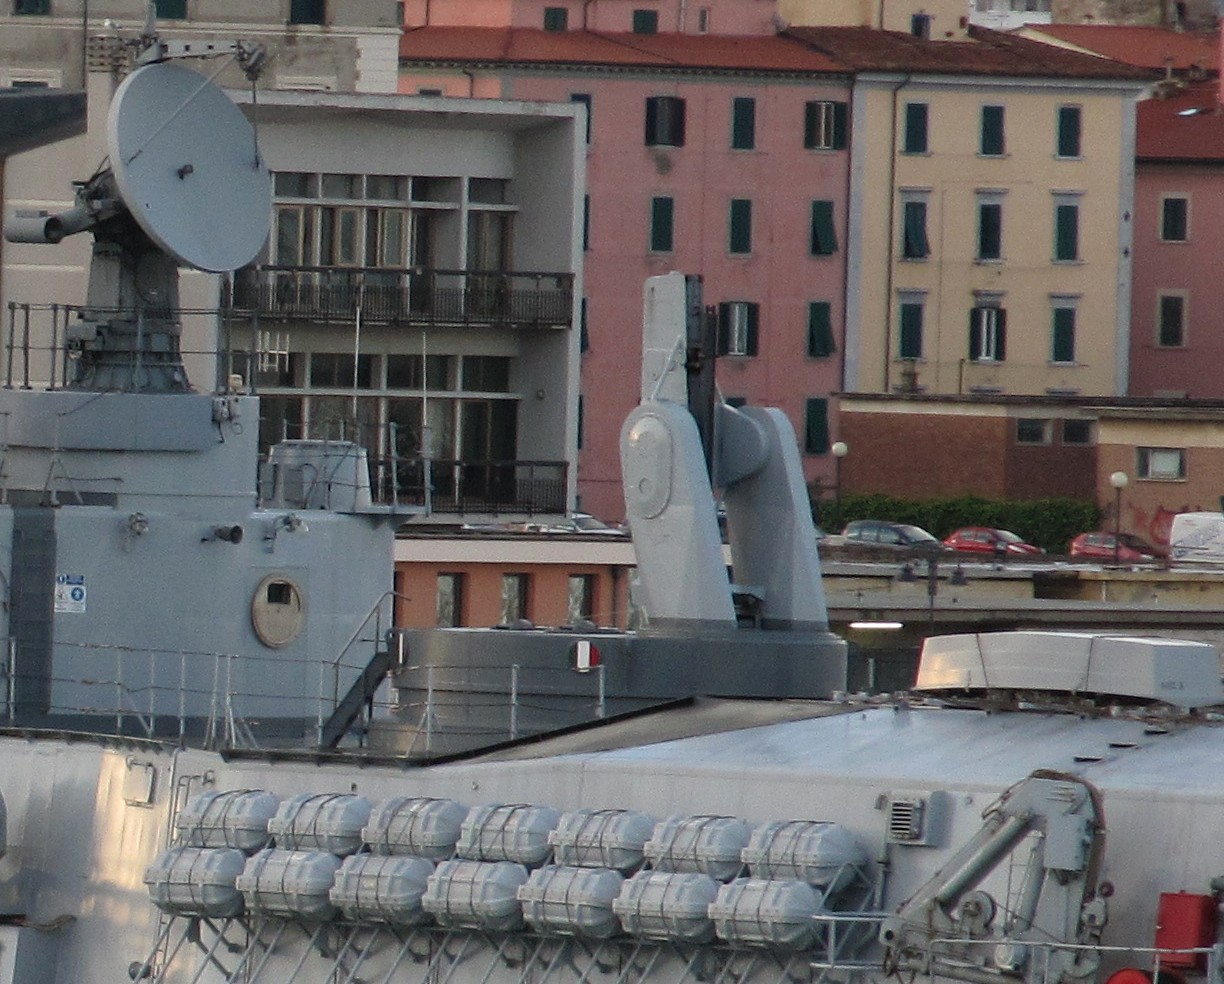 mk-13 missile launcher durand de la penne class destroyer ddg italian navy